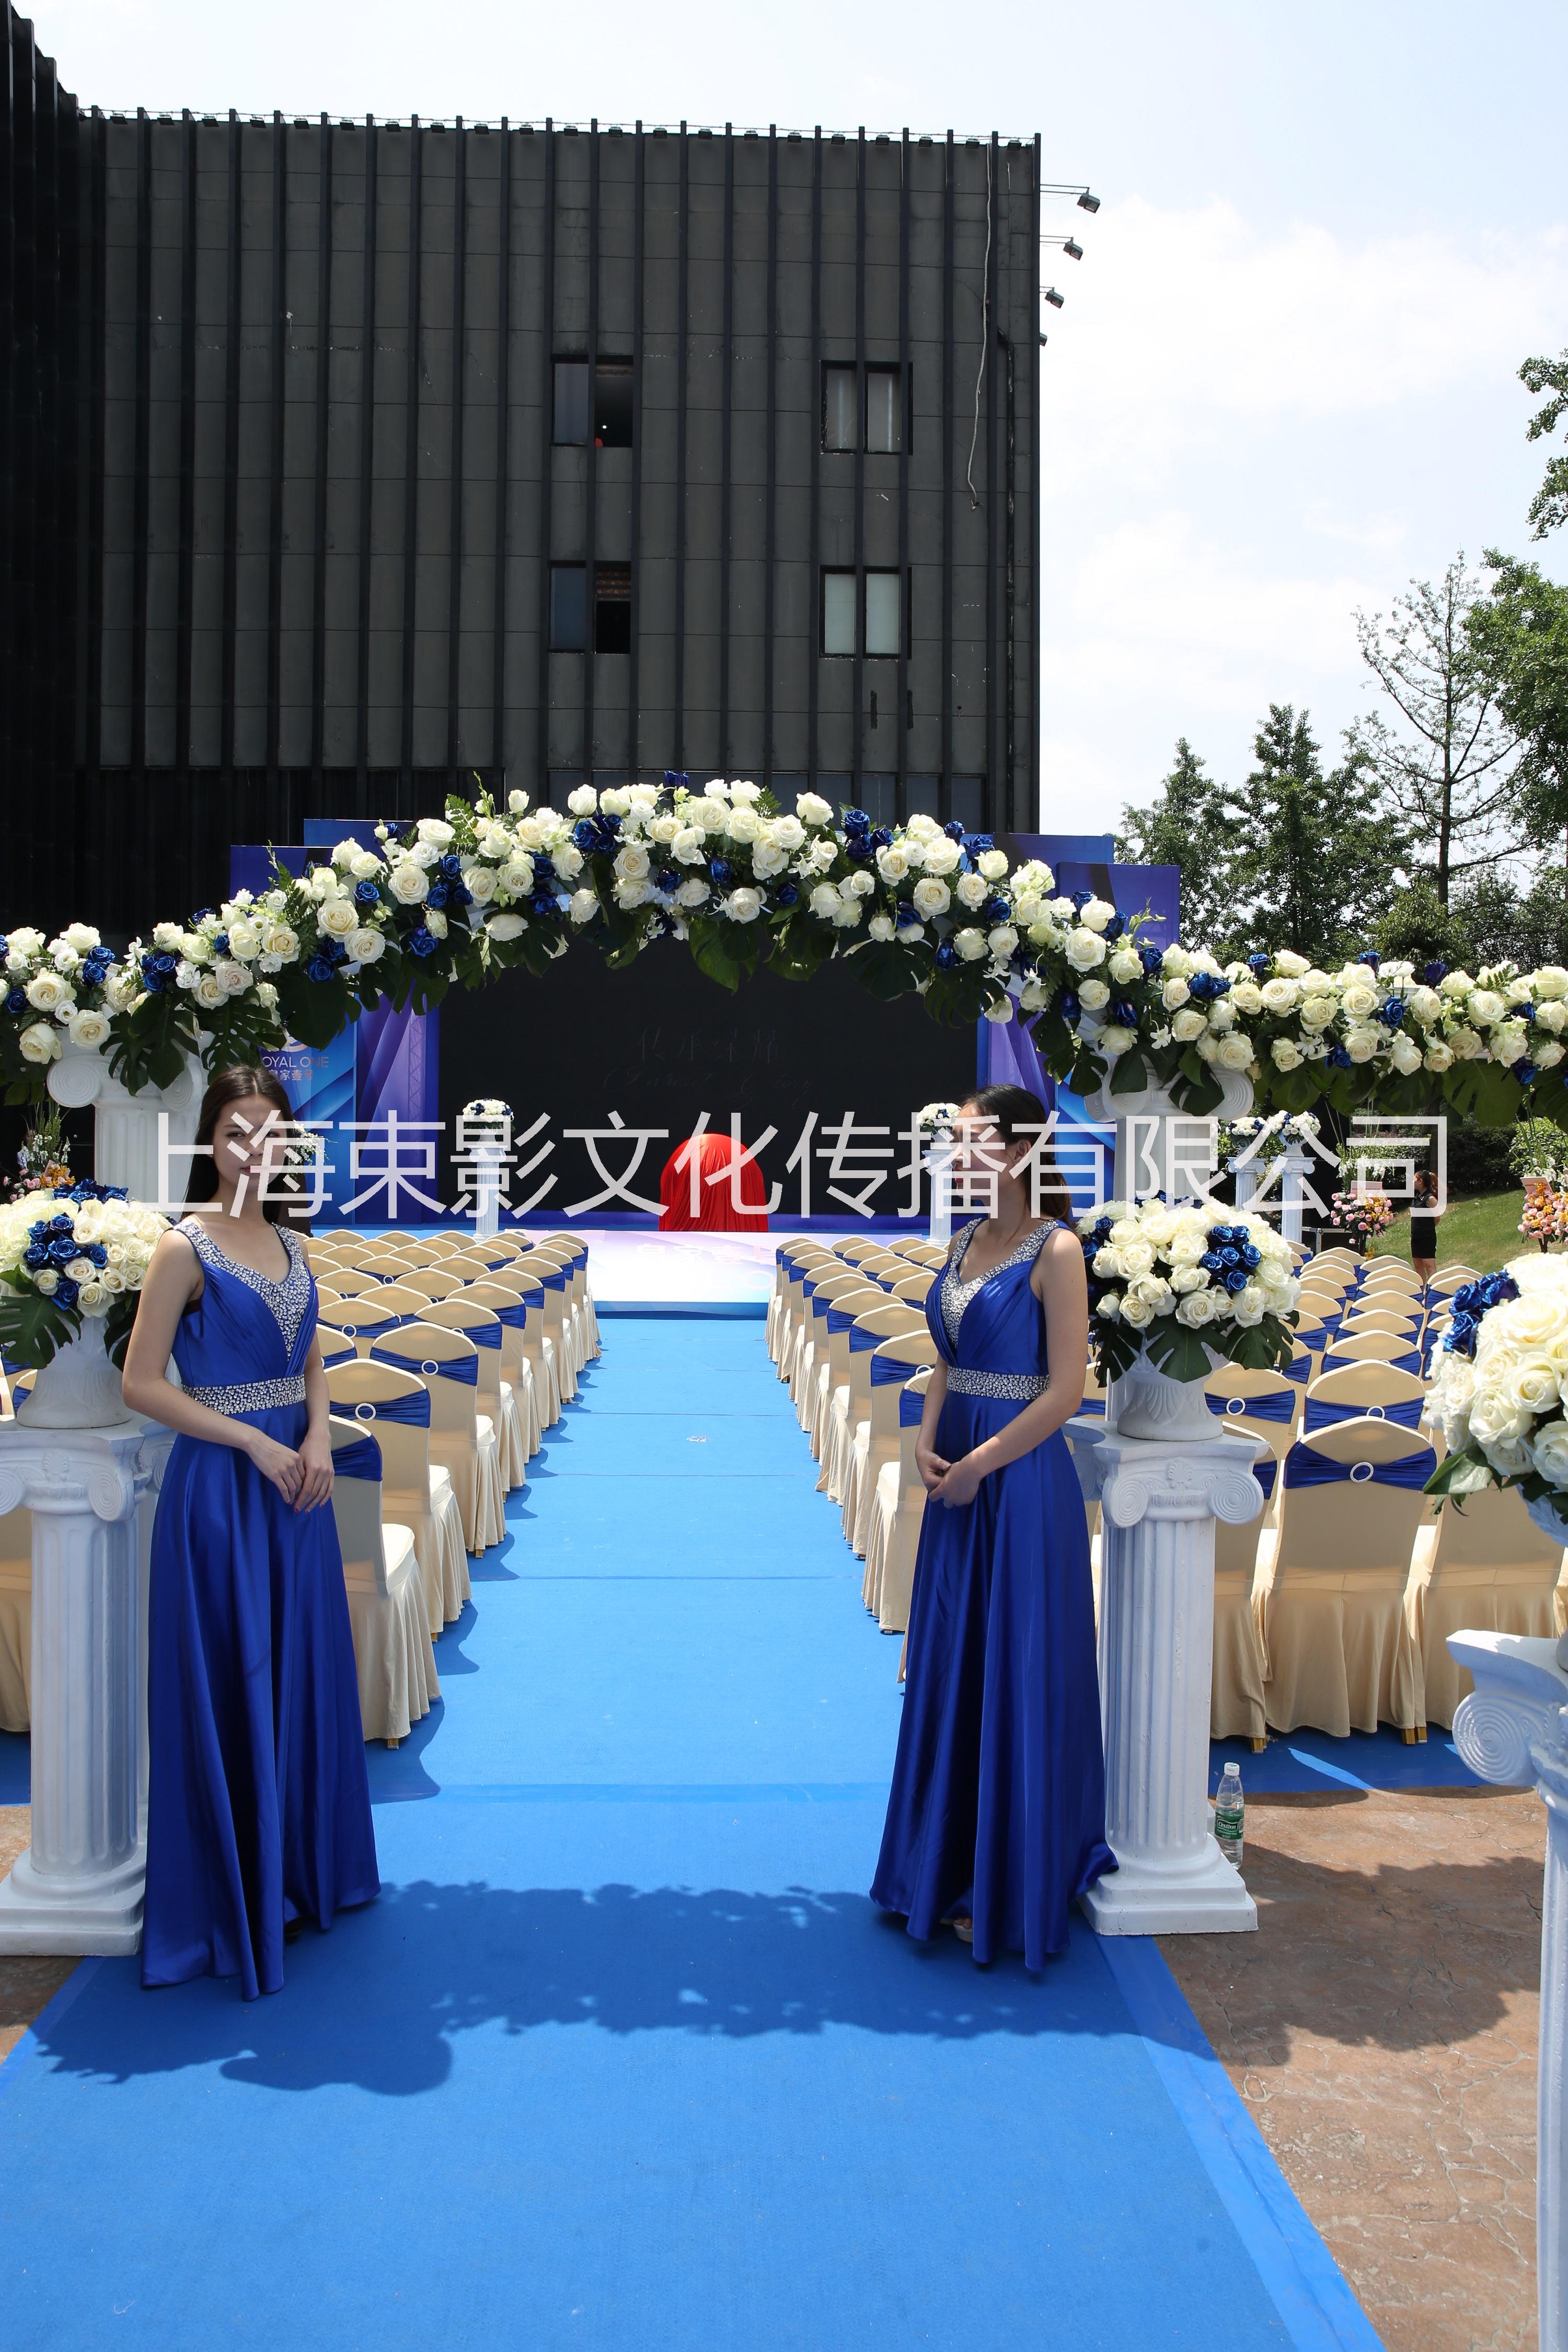 上海开业庆典策划  开业庆典设备出租 开业剪彩仪式布置图片